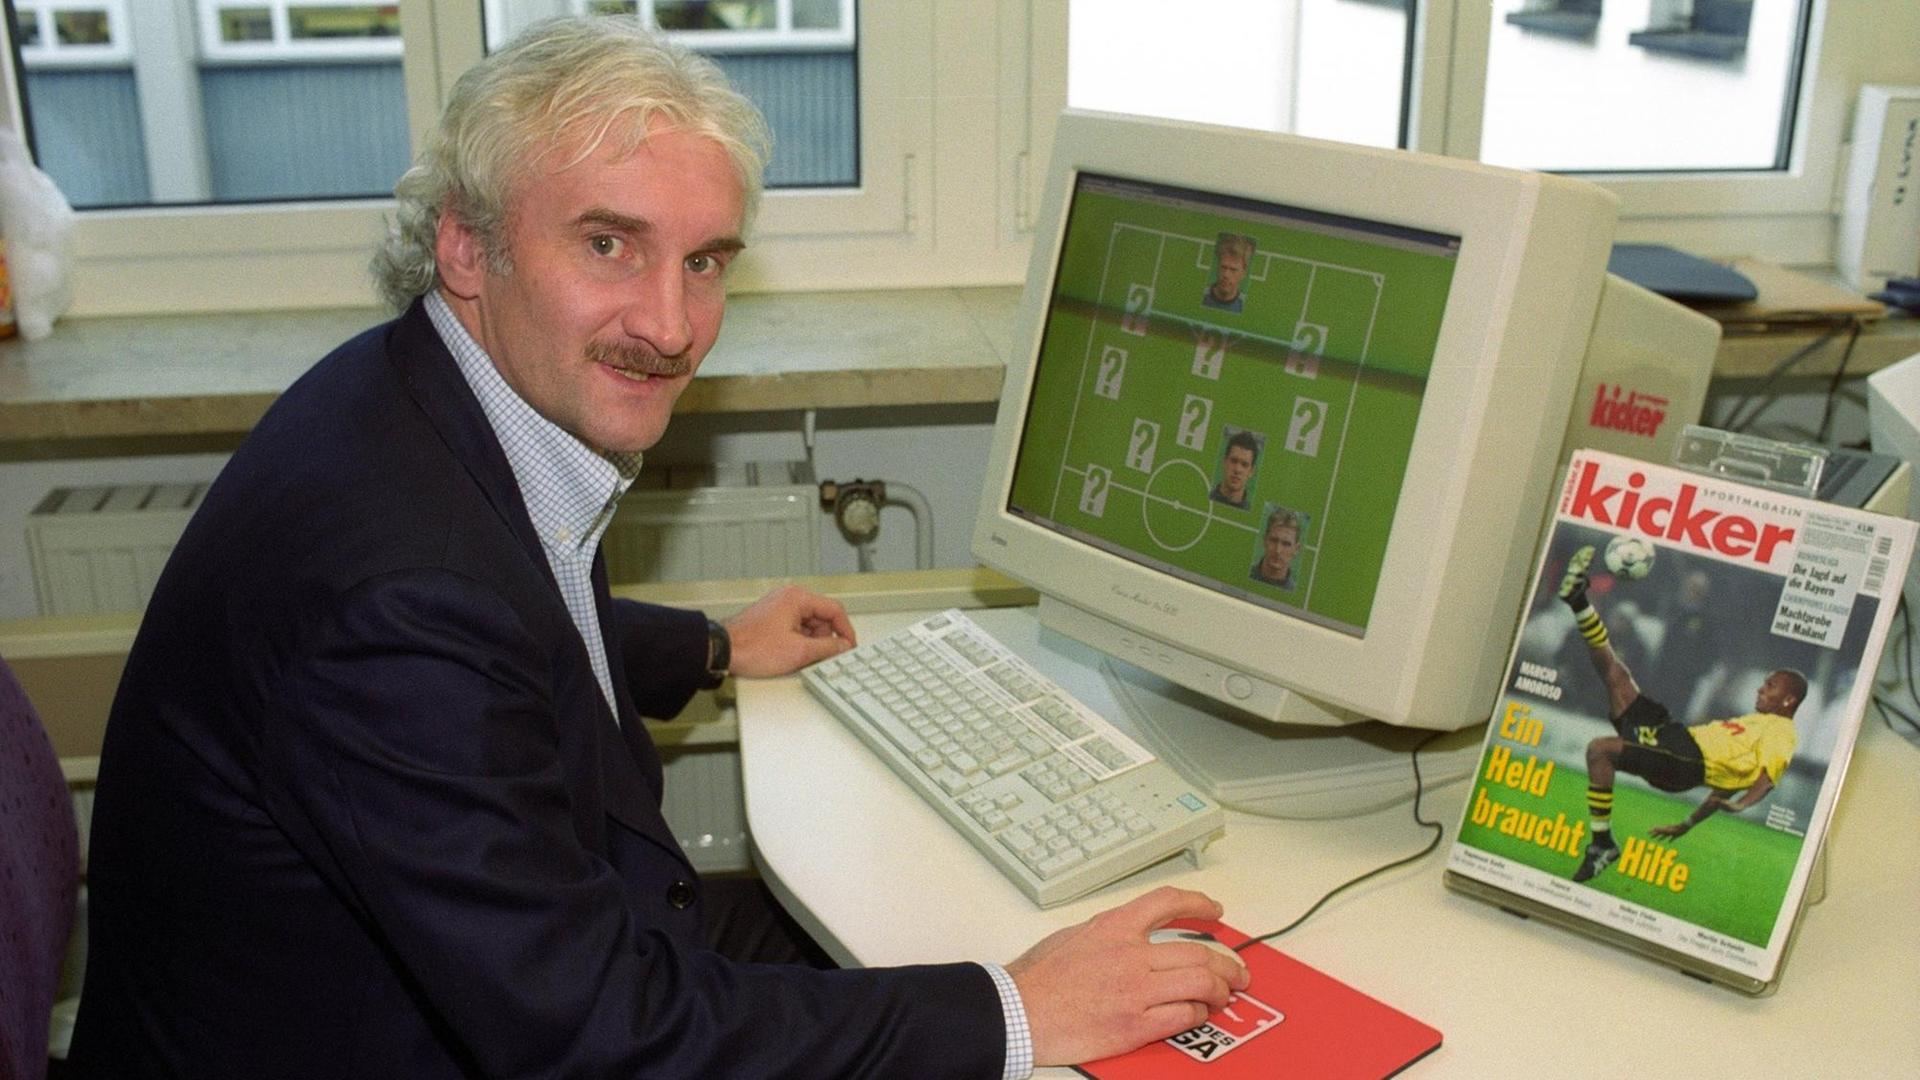 Der damalige Teamchef der deutschen Fußball-Nationalmannschaft der Männer, Rudi Völler, sitzt am 09.02.2002 vor einem Bildschirm in der Redaktion des Sportmagazins "Kicker"